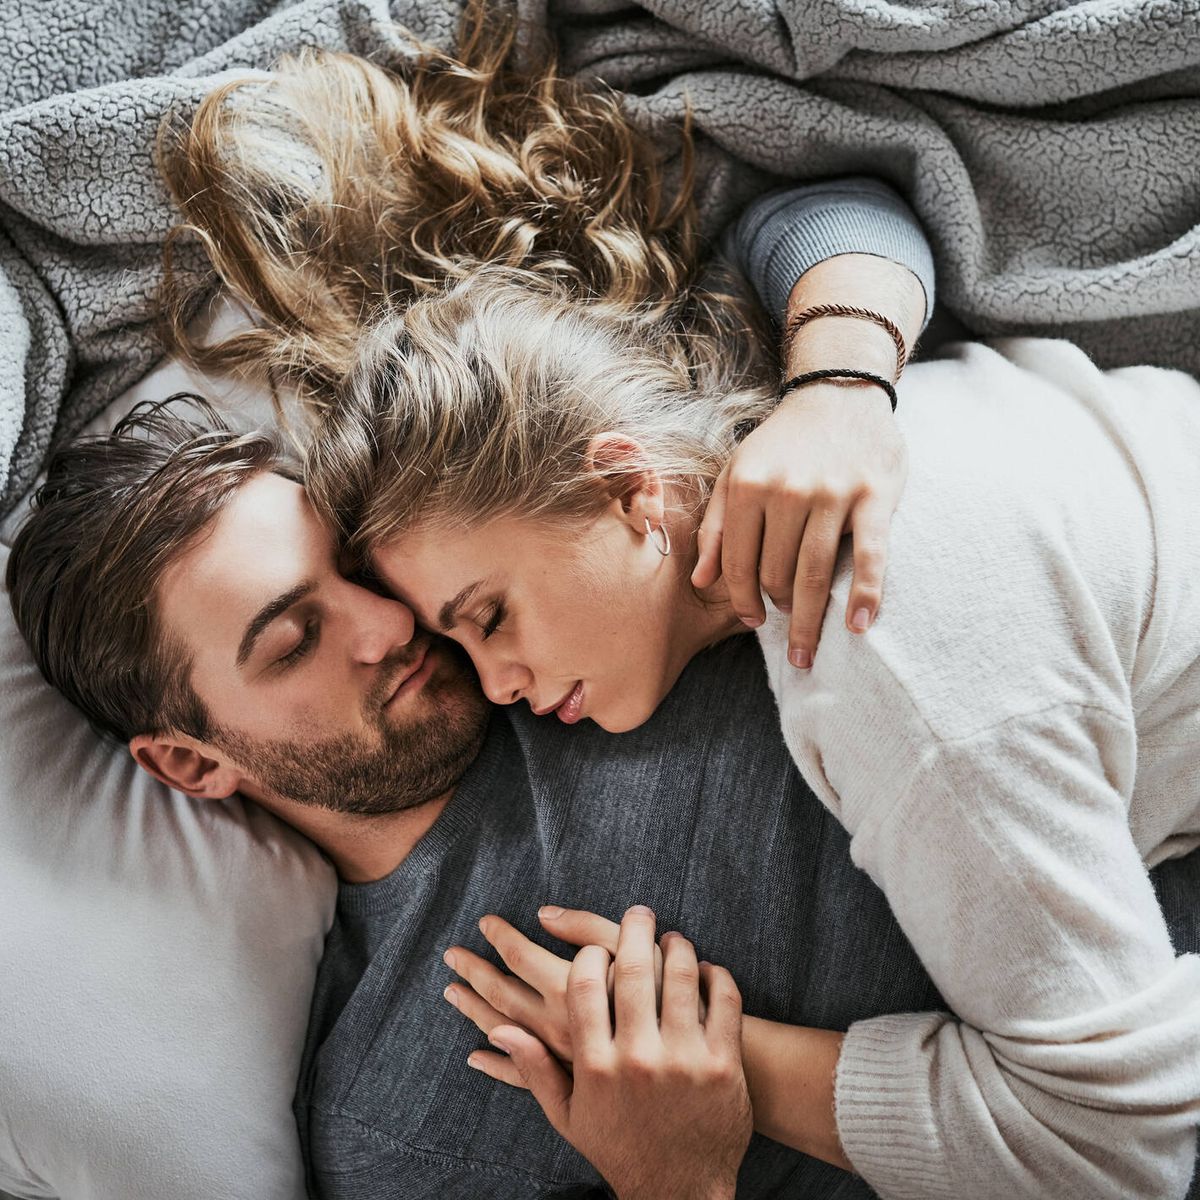 Compartir cama con tu pareja te hace dormir mejor, según un estudio